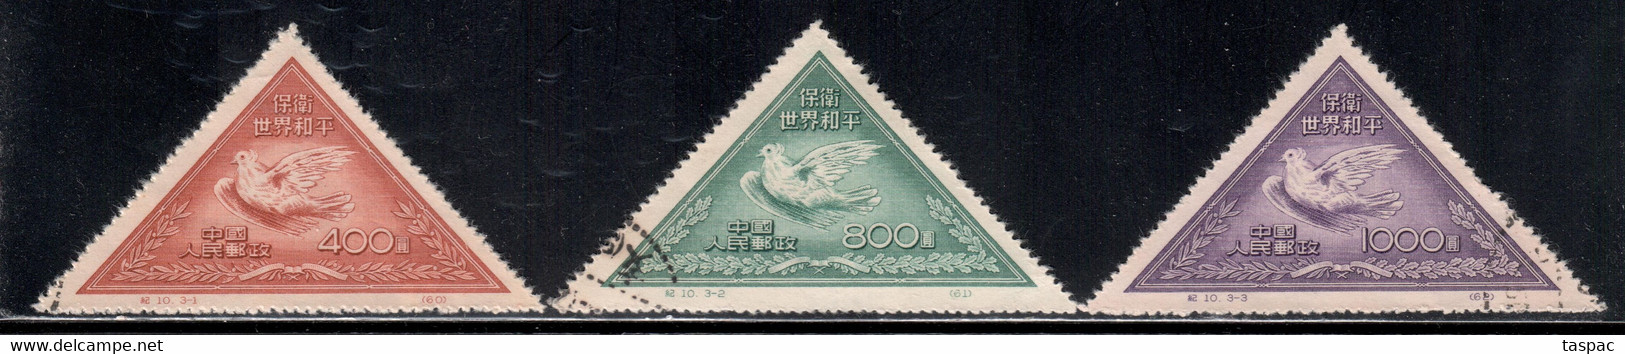 China P.R. 1951 Mi# 113-115 II Used - Reprints - Picasso Dove - Ristampe Ufficiali